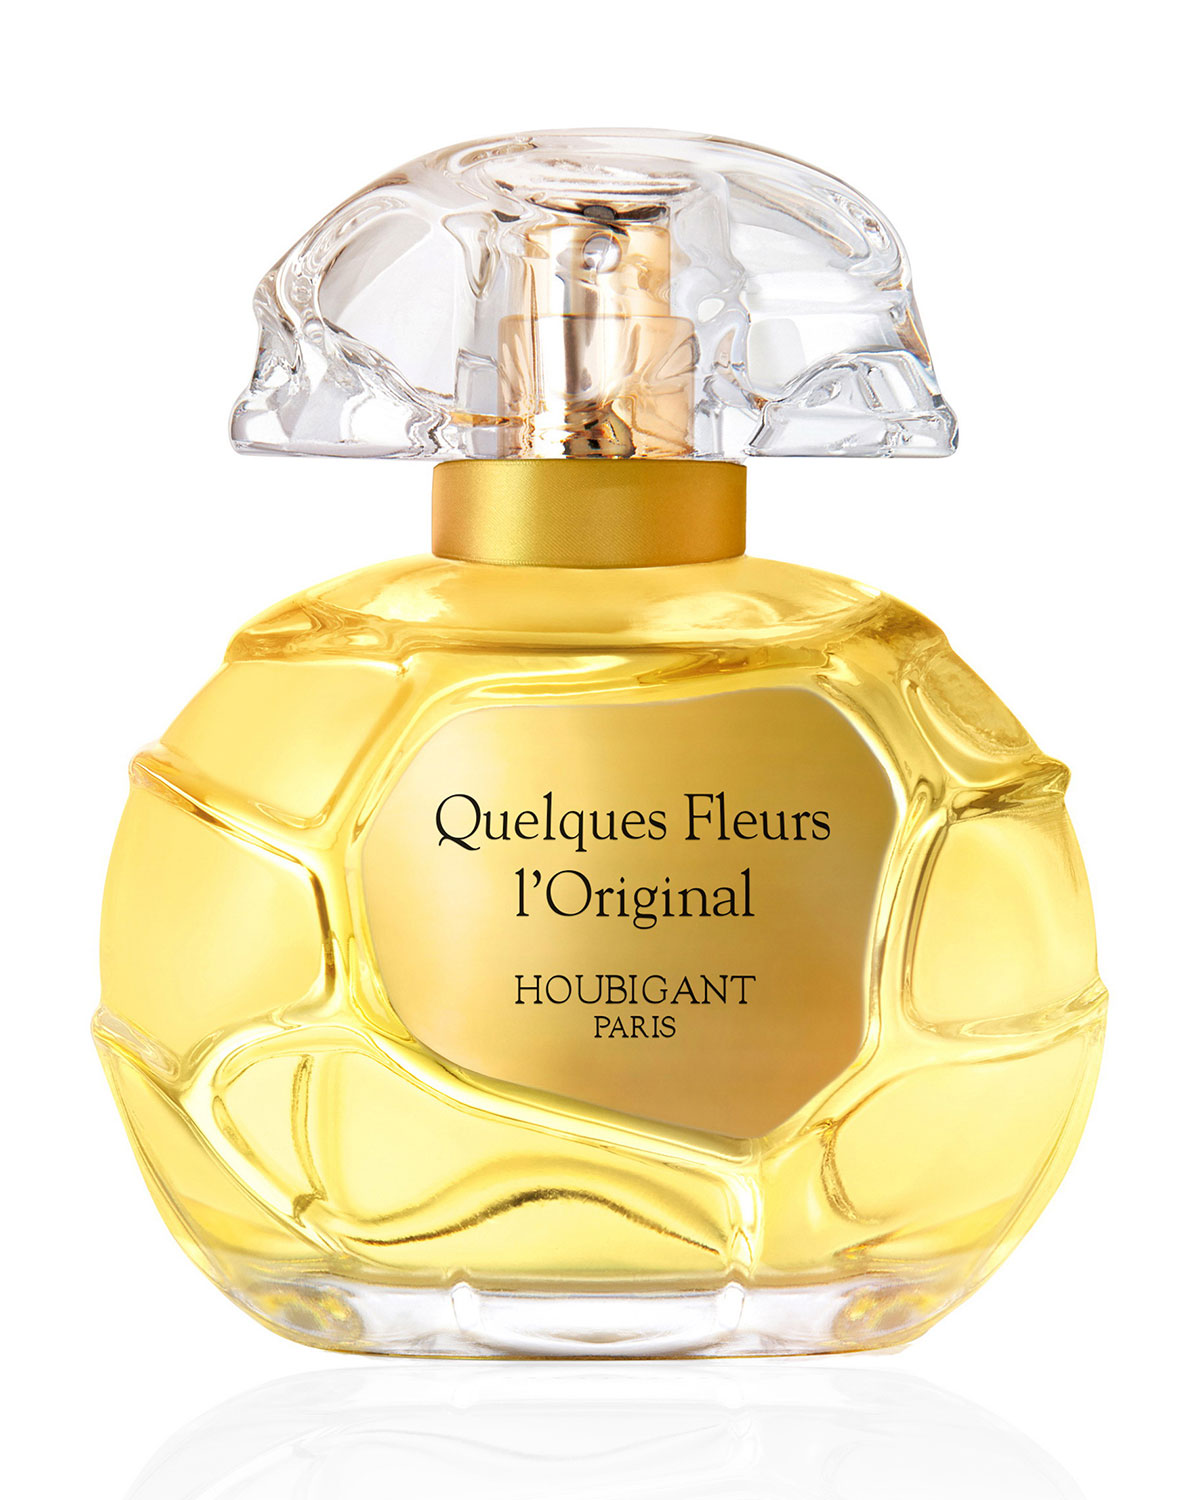 Quelques Fleurs L'Original Collection Privee Houbigant Parfum